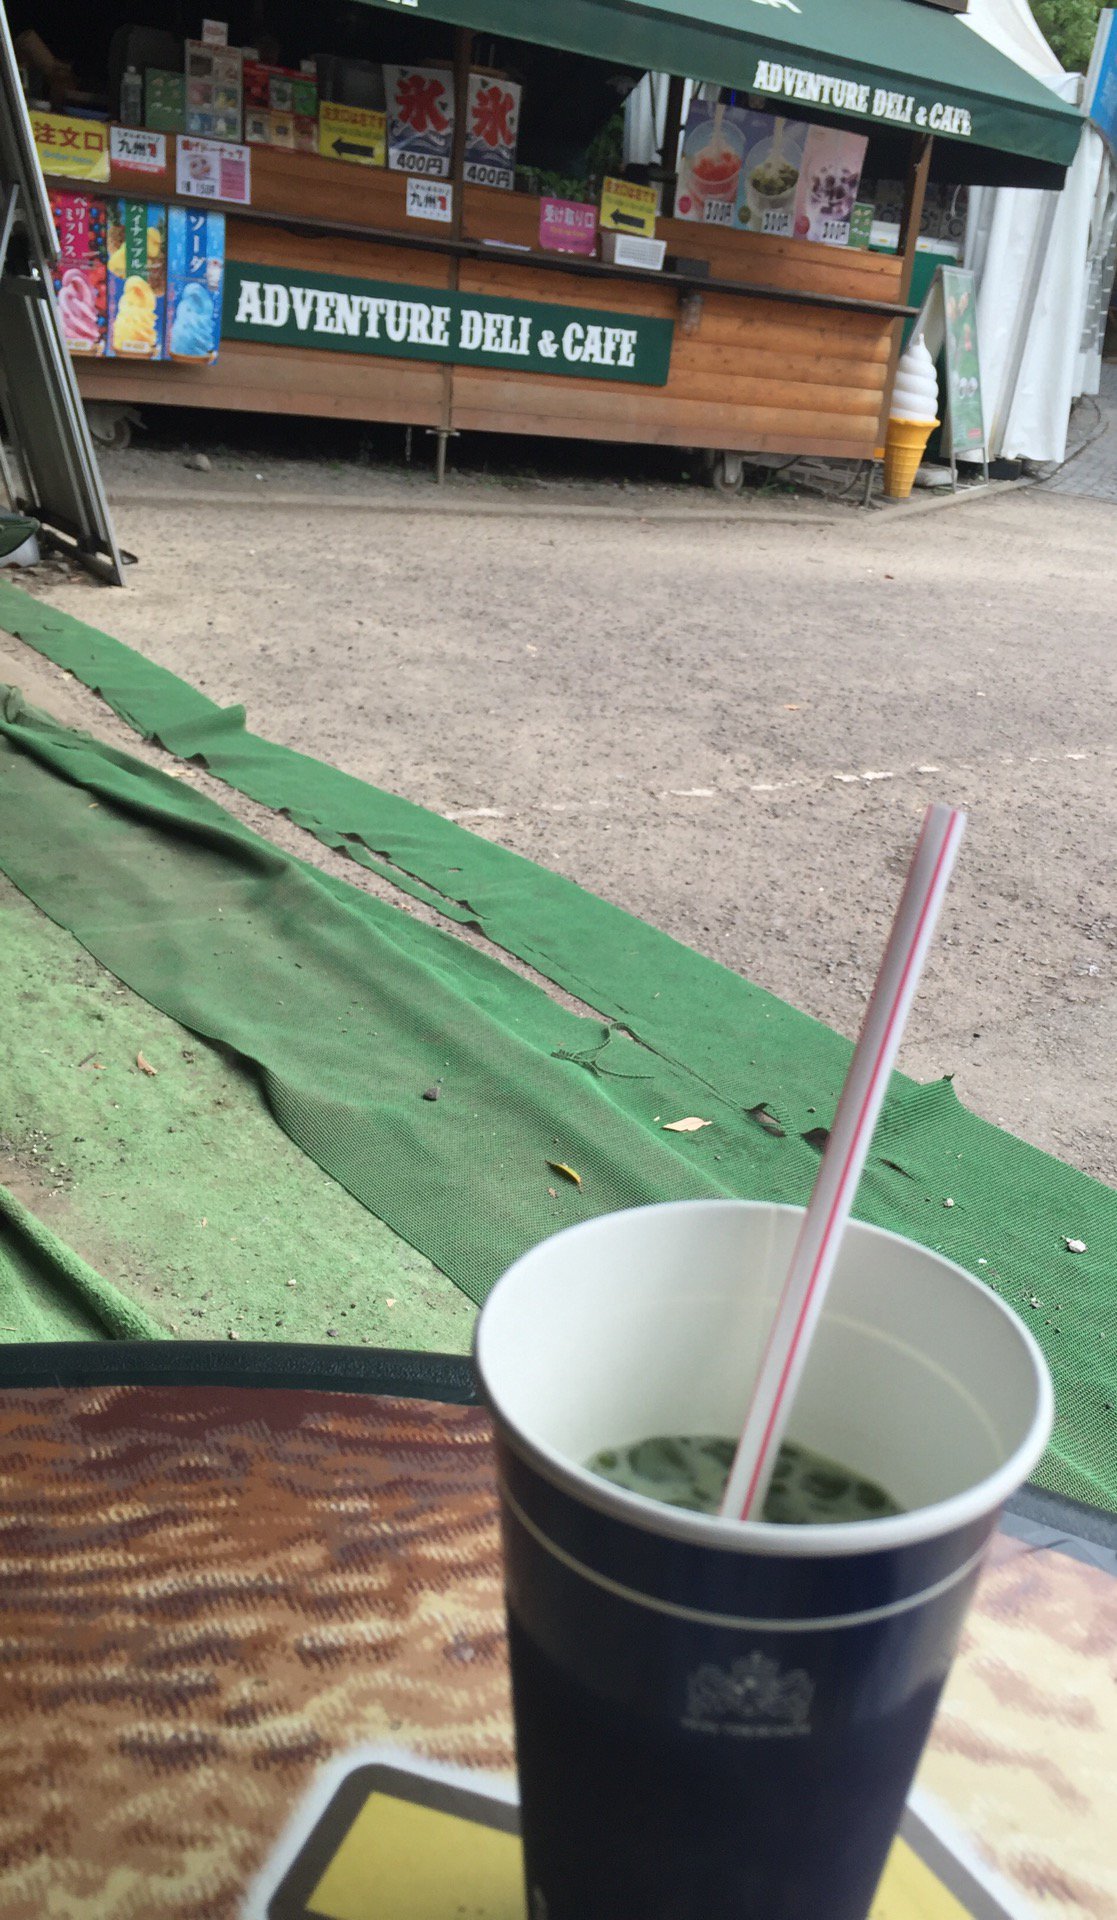 氷カフェ 抹茶味。いちご味も美味しい。税込み300円。 (@ ADVENTURE DELI&CAFE) https://t.co/WwKRqWEFhD https://t.co/0KWFnRYTbi